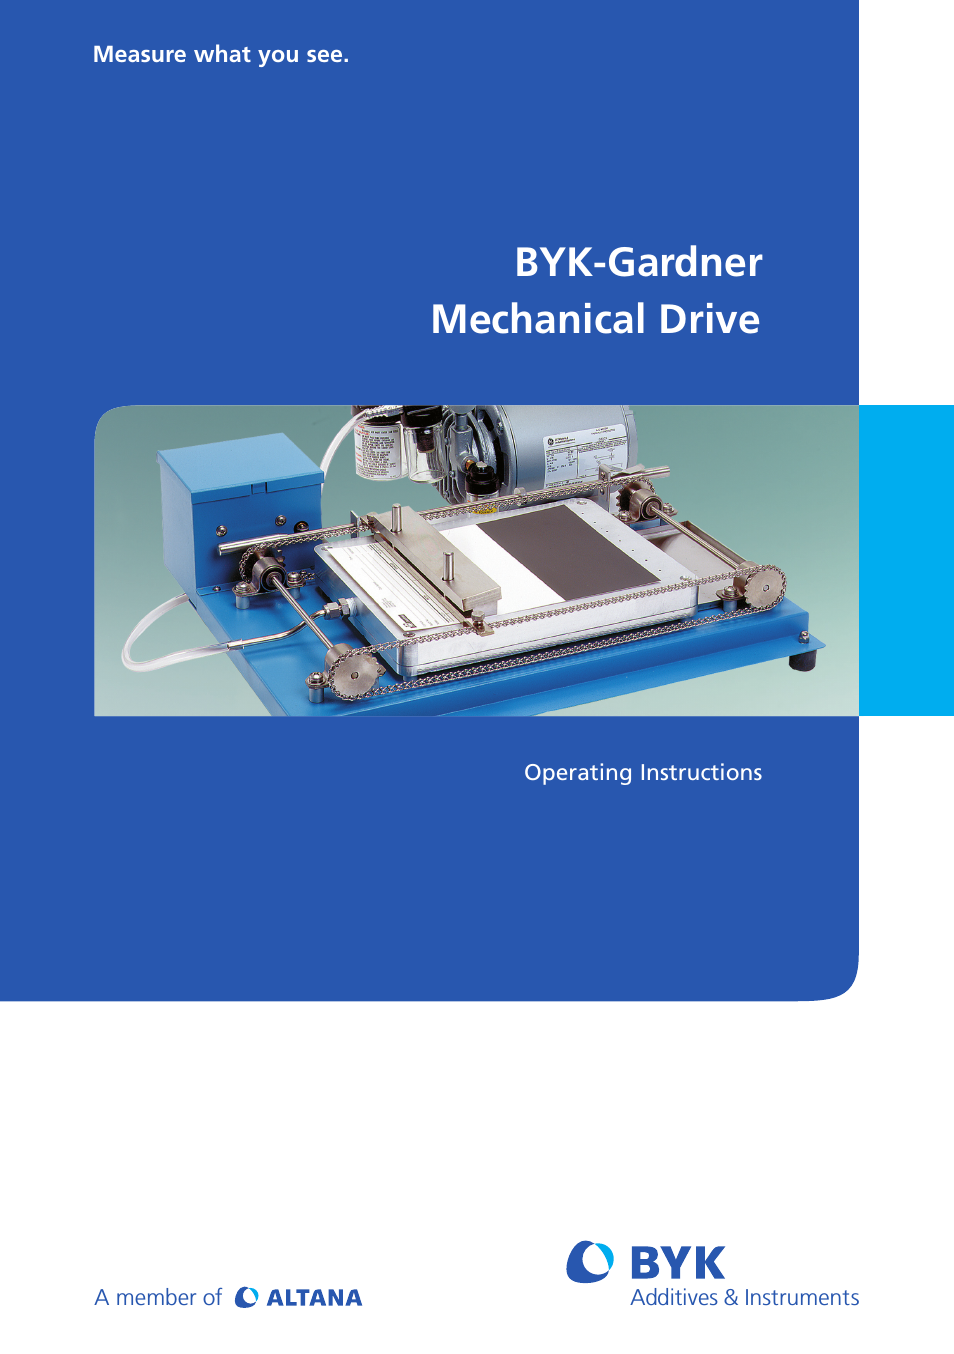 BYK-Gardner Mechanical Drive